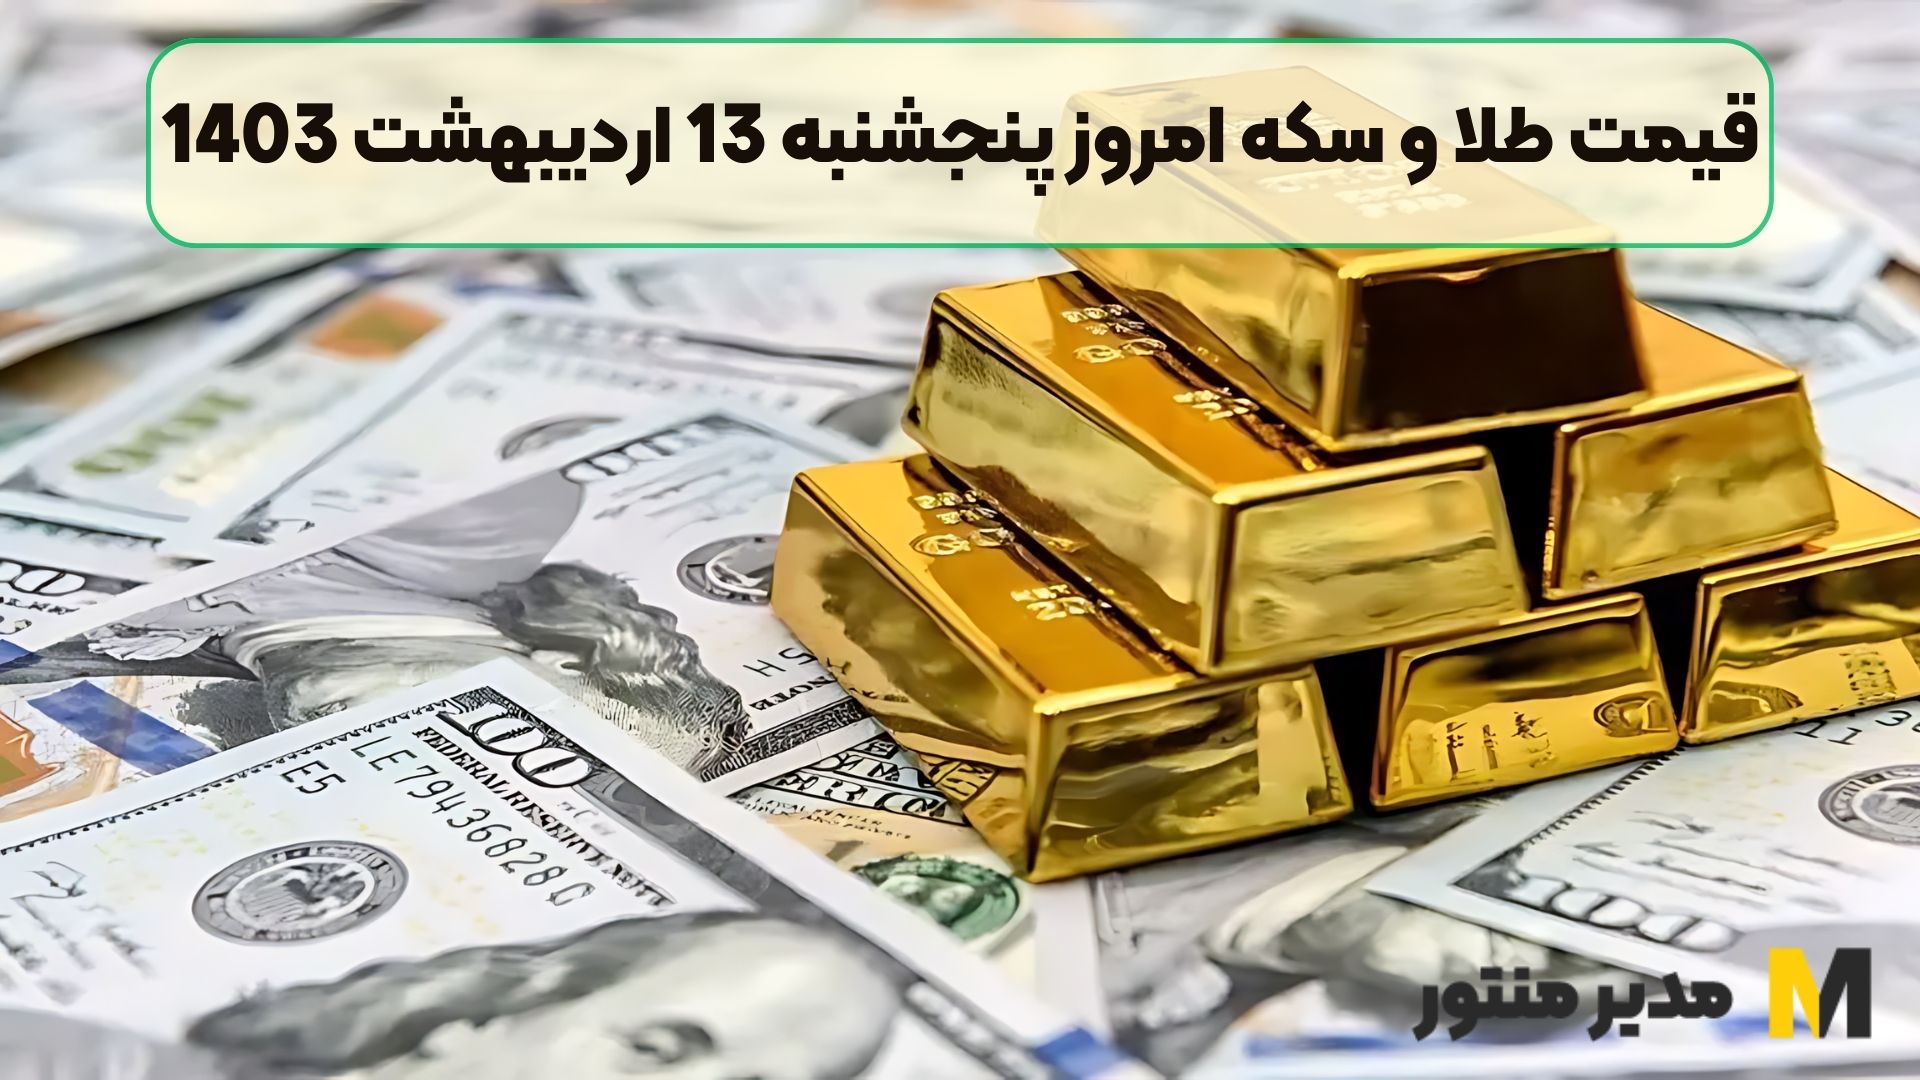 قیمت طلا و سکه امروز پنجشنبه 13 اردیبهشت 1403